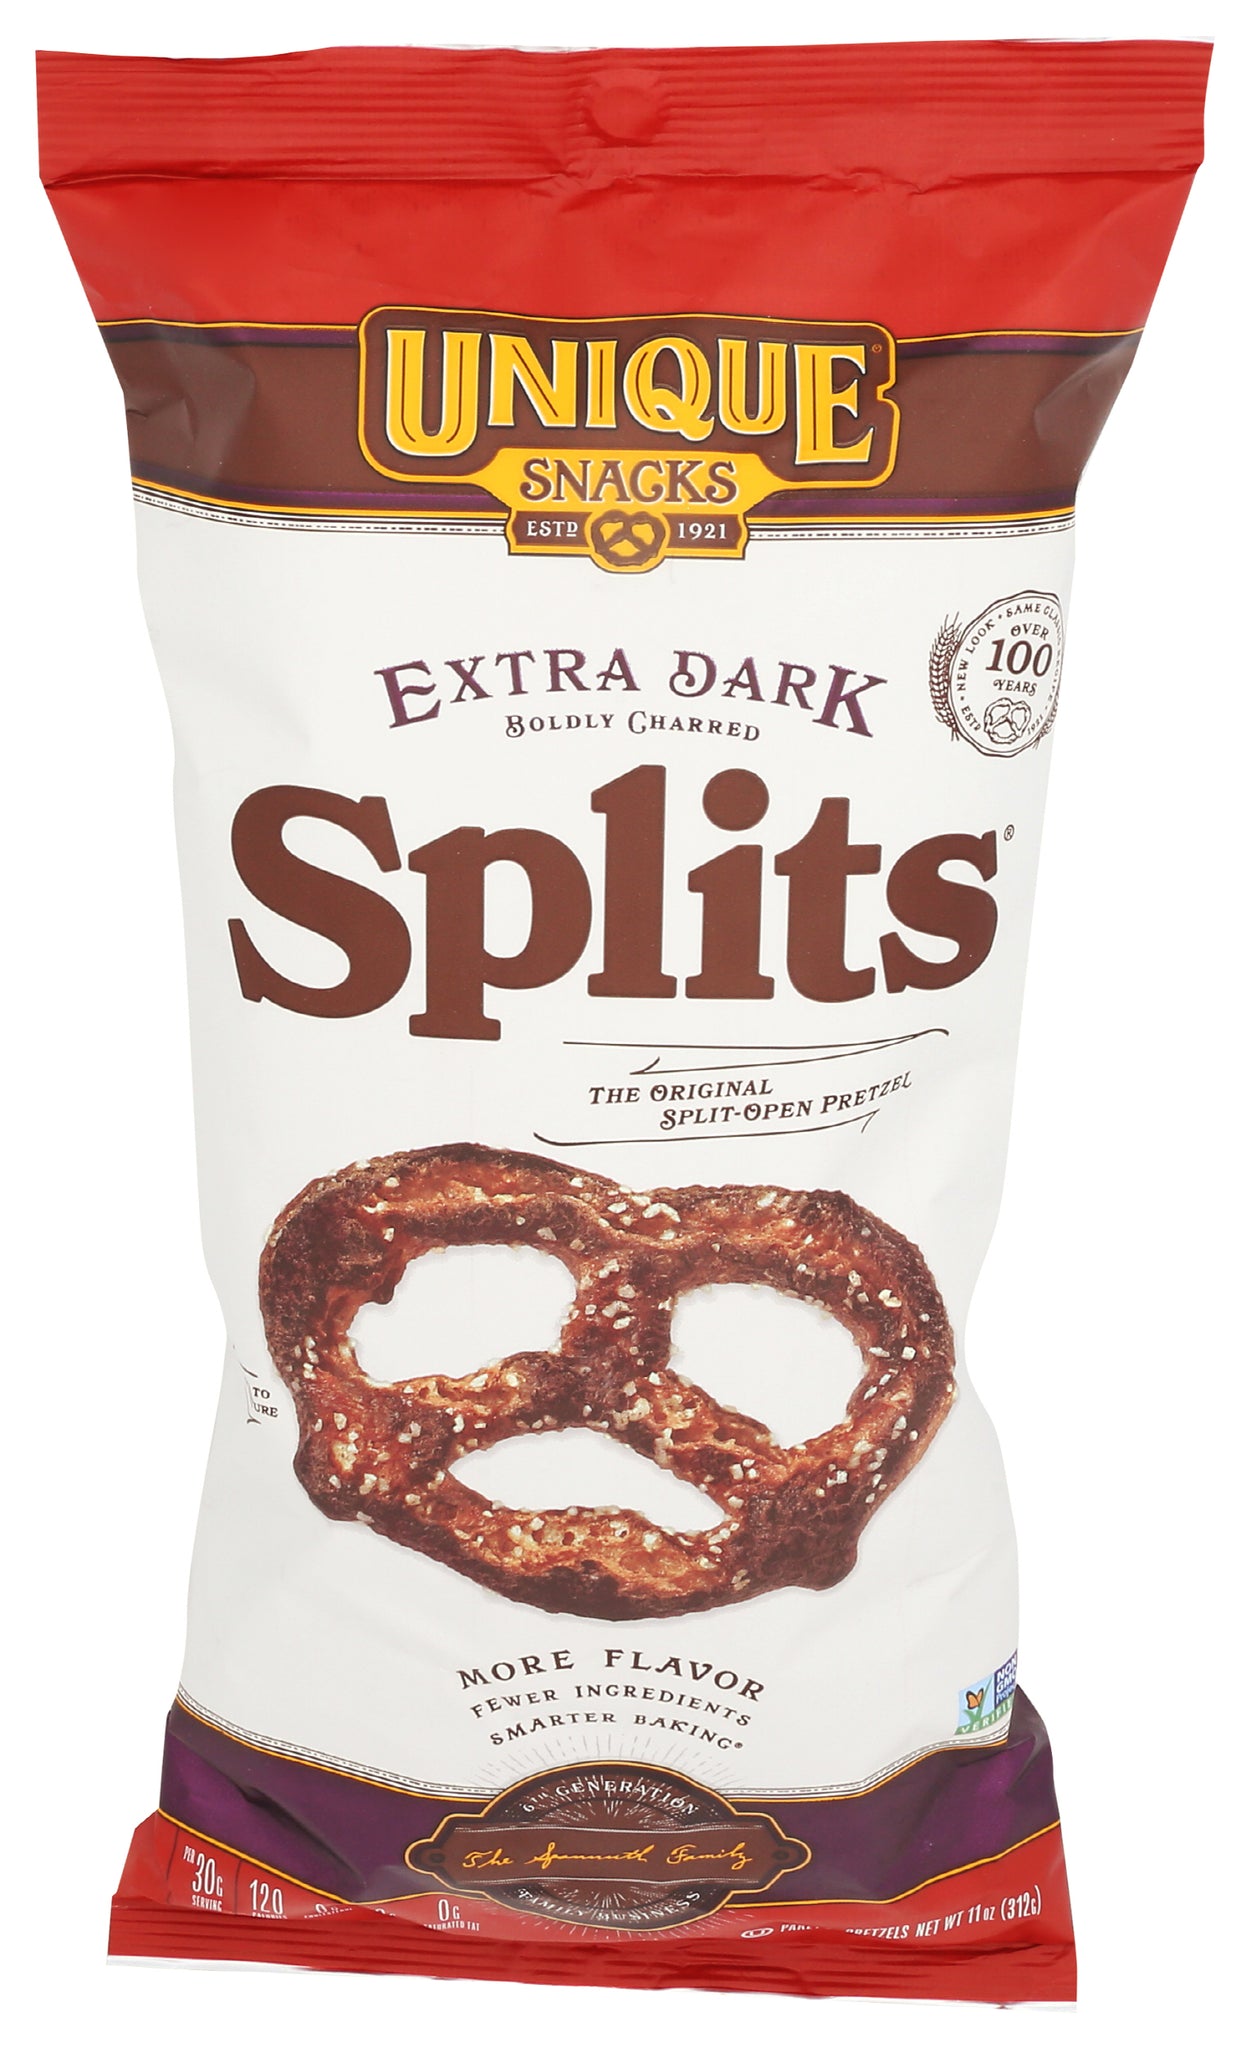 Unique Snacks - Pretzels - Extra Dark "Splits" Pretzels, Delicious Vegan Snack Pretzels Individual Pack, Large OU Kosher Pretzels, 1 Bag